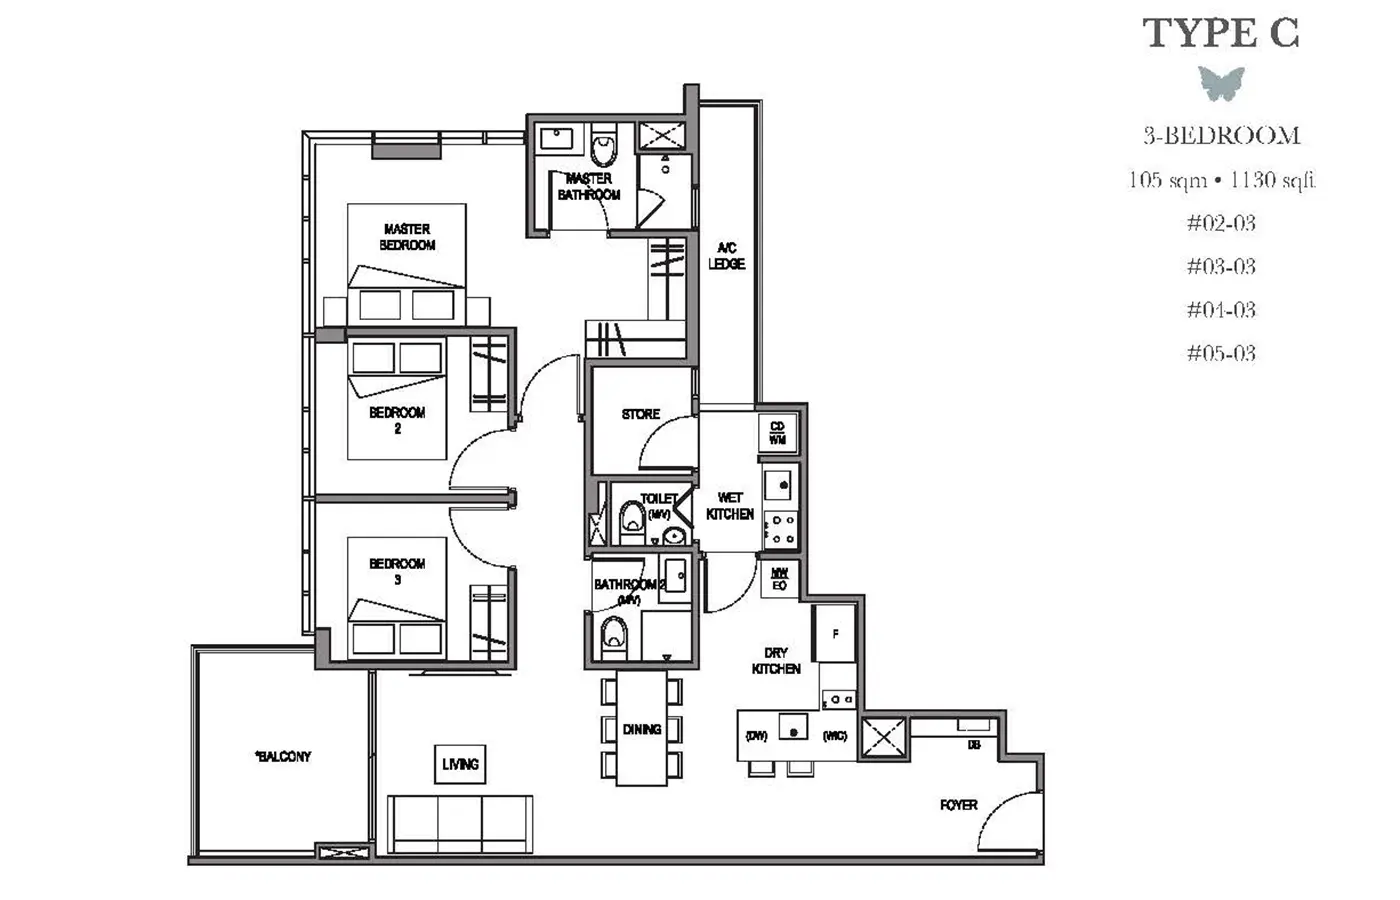 La Mariposa Condo Floor Plan - 3 Bedroom C